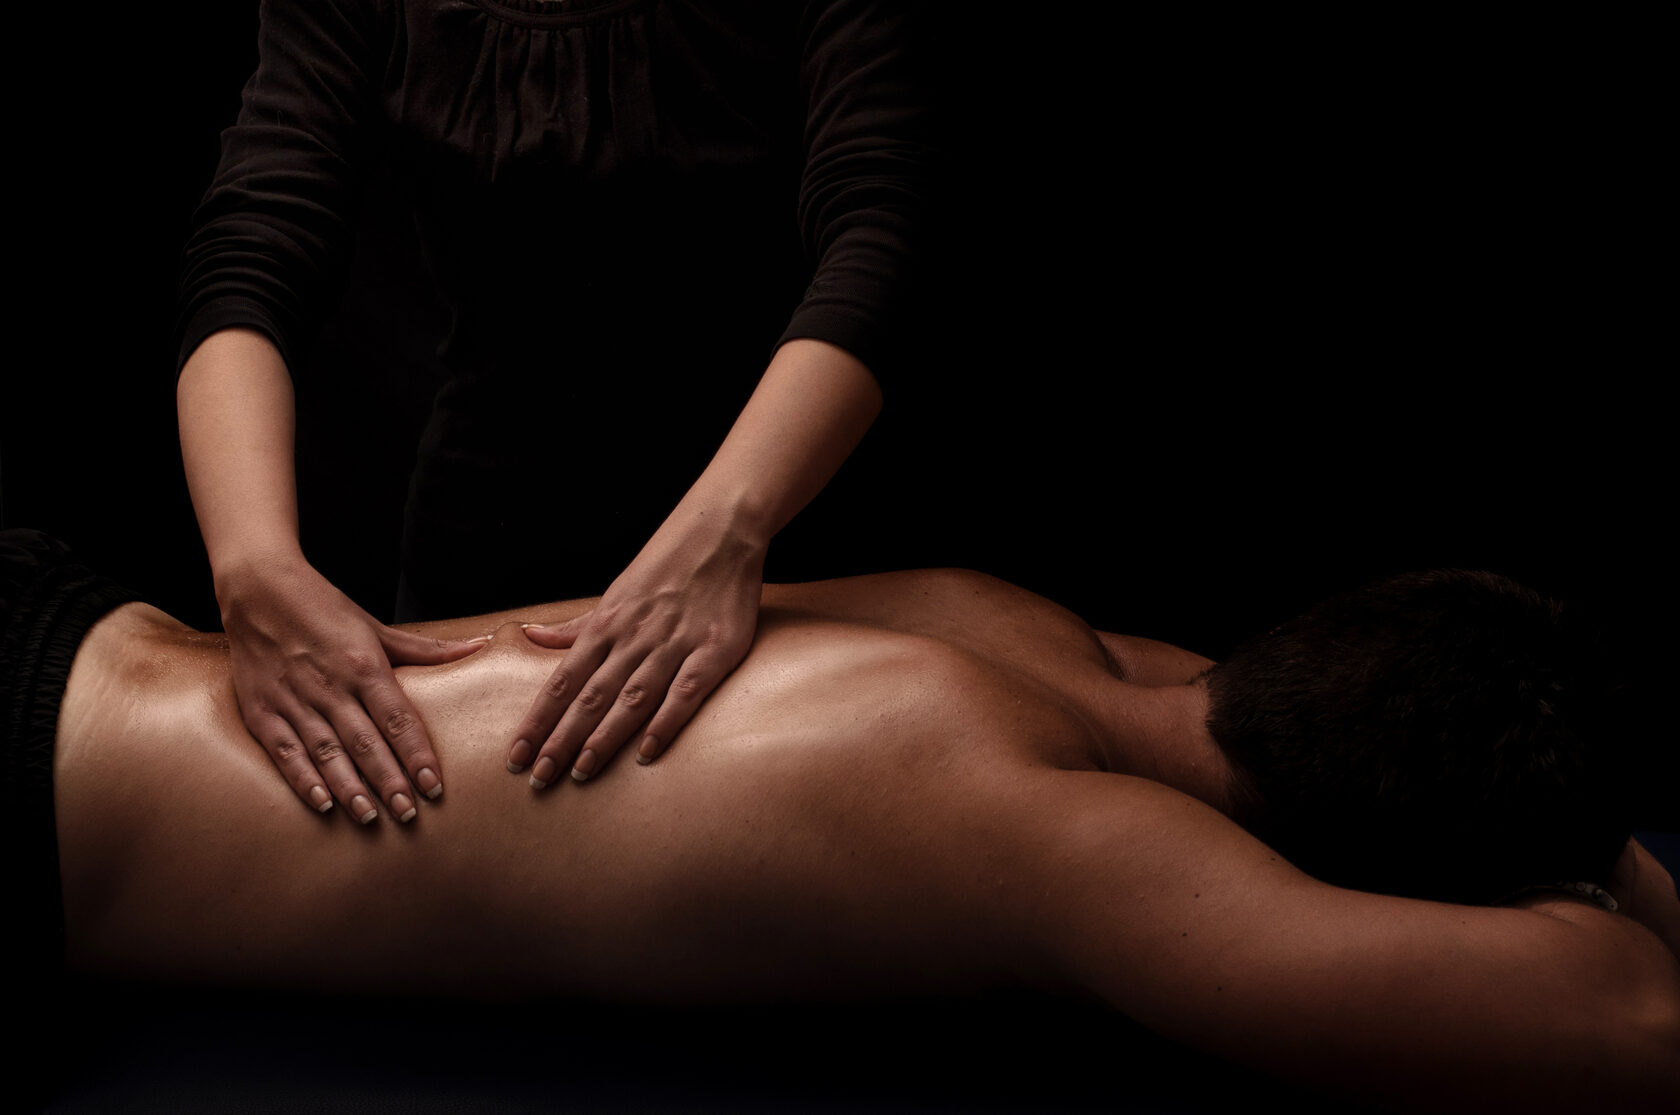 Обучение азам голого массажа